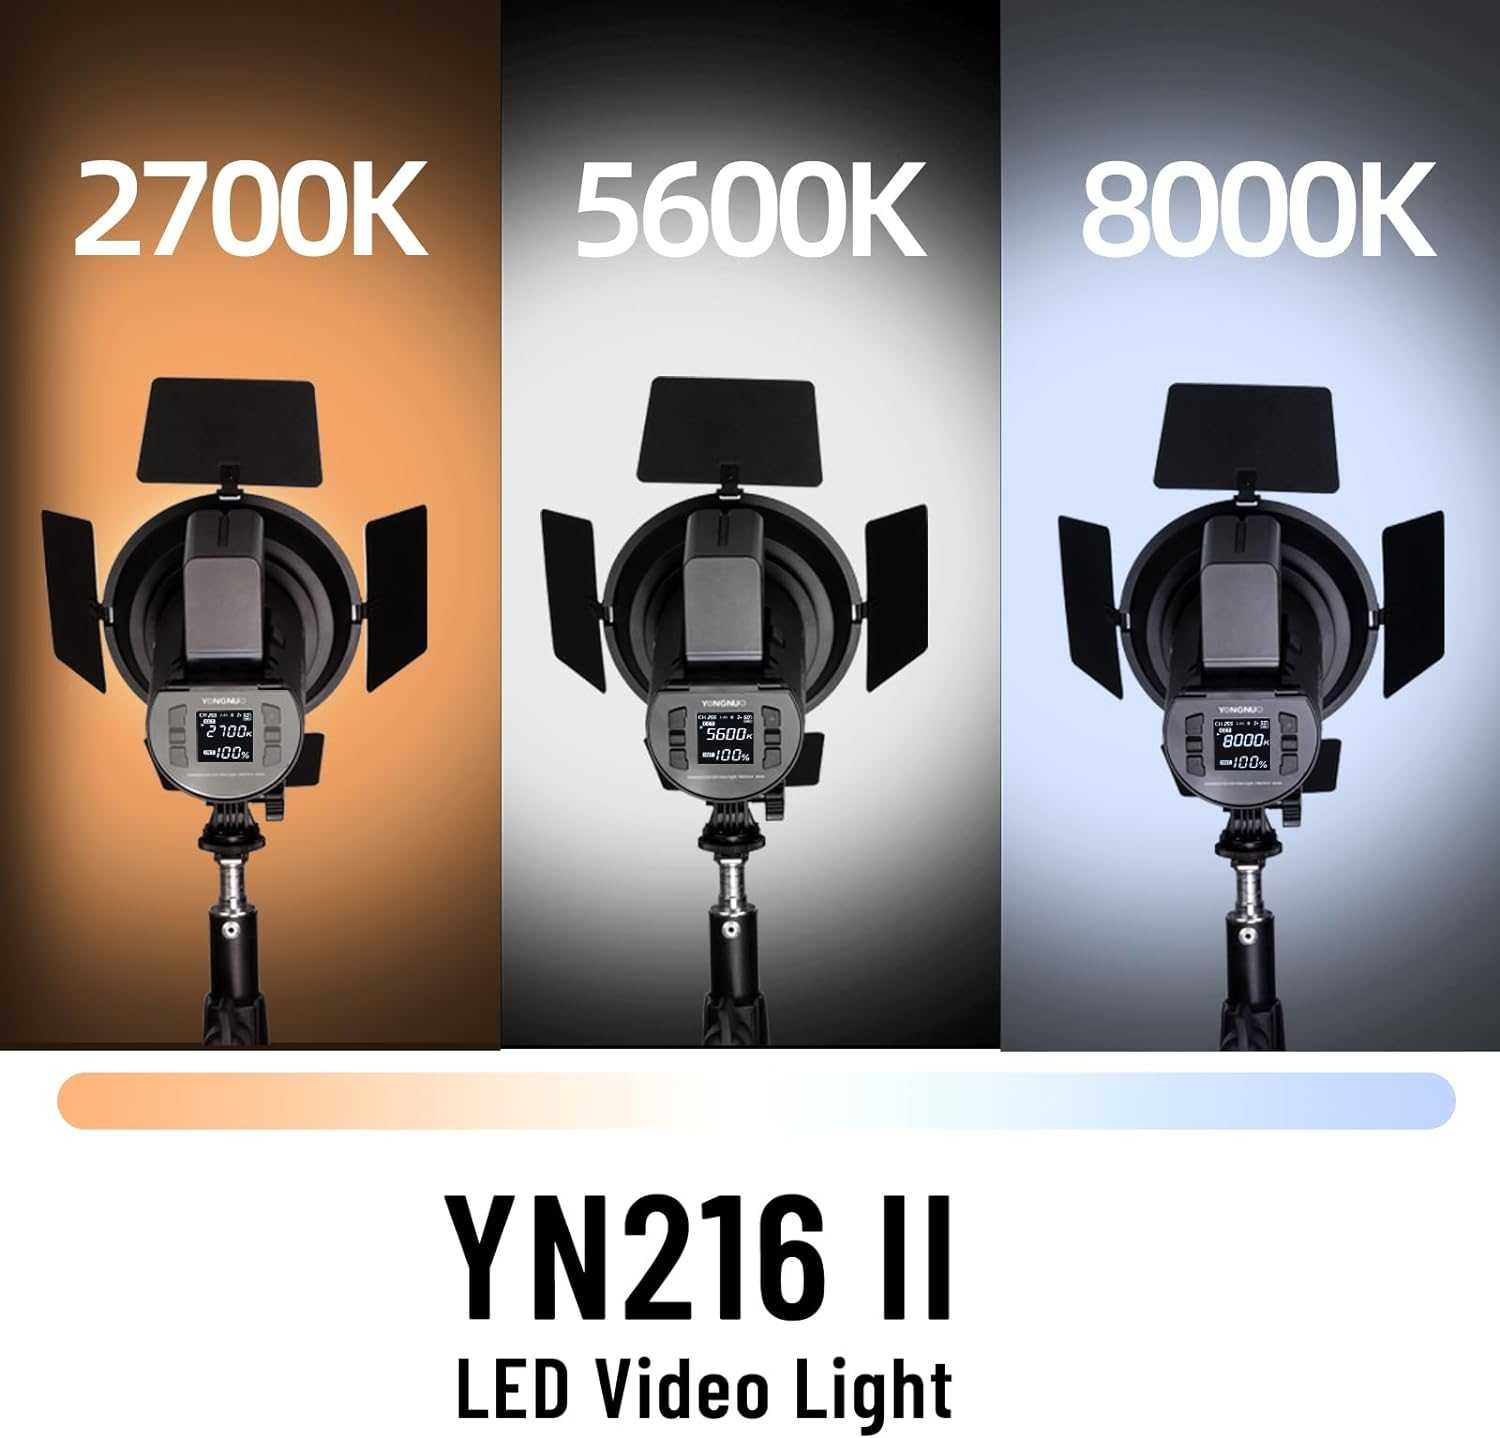 LED YONGNUO YNLUX 200 PRO VIDEO LIGHT